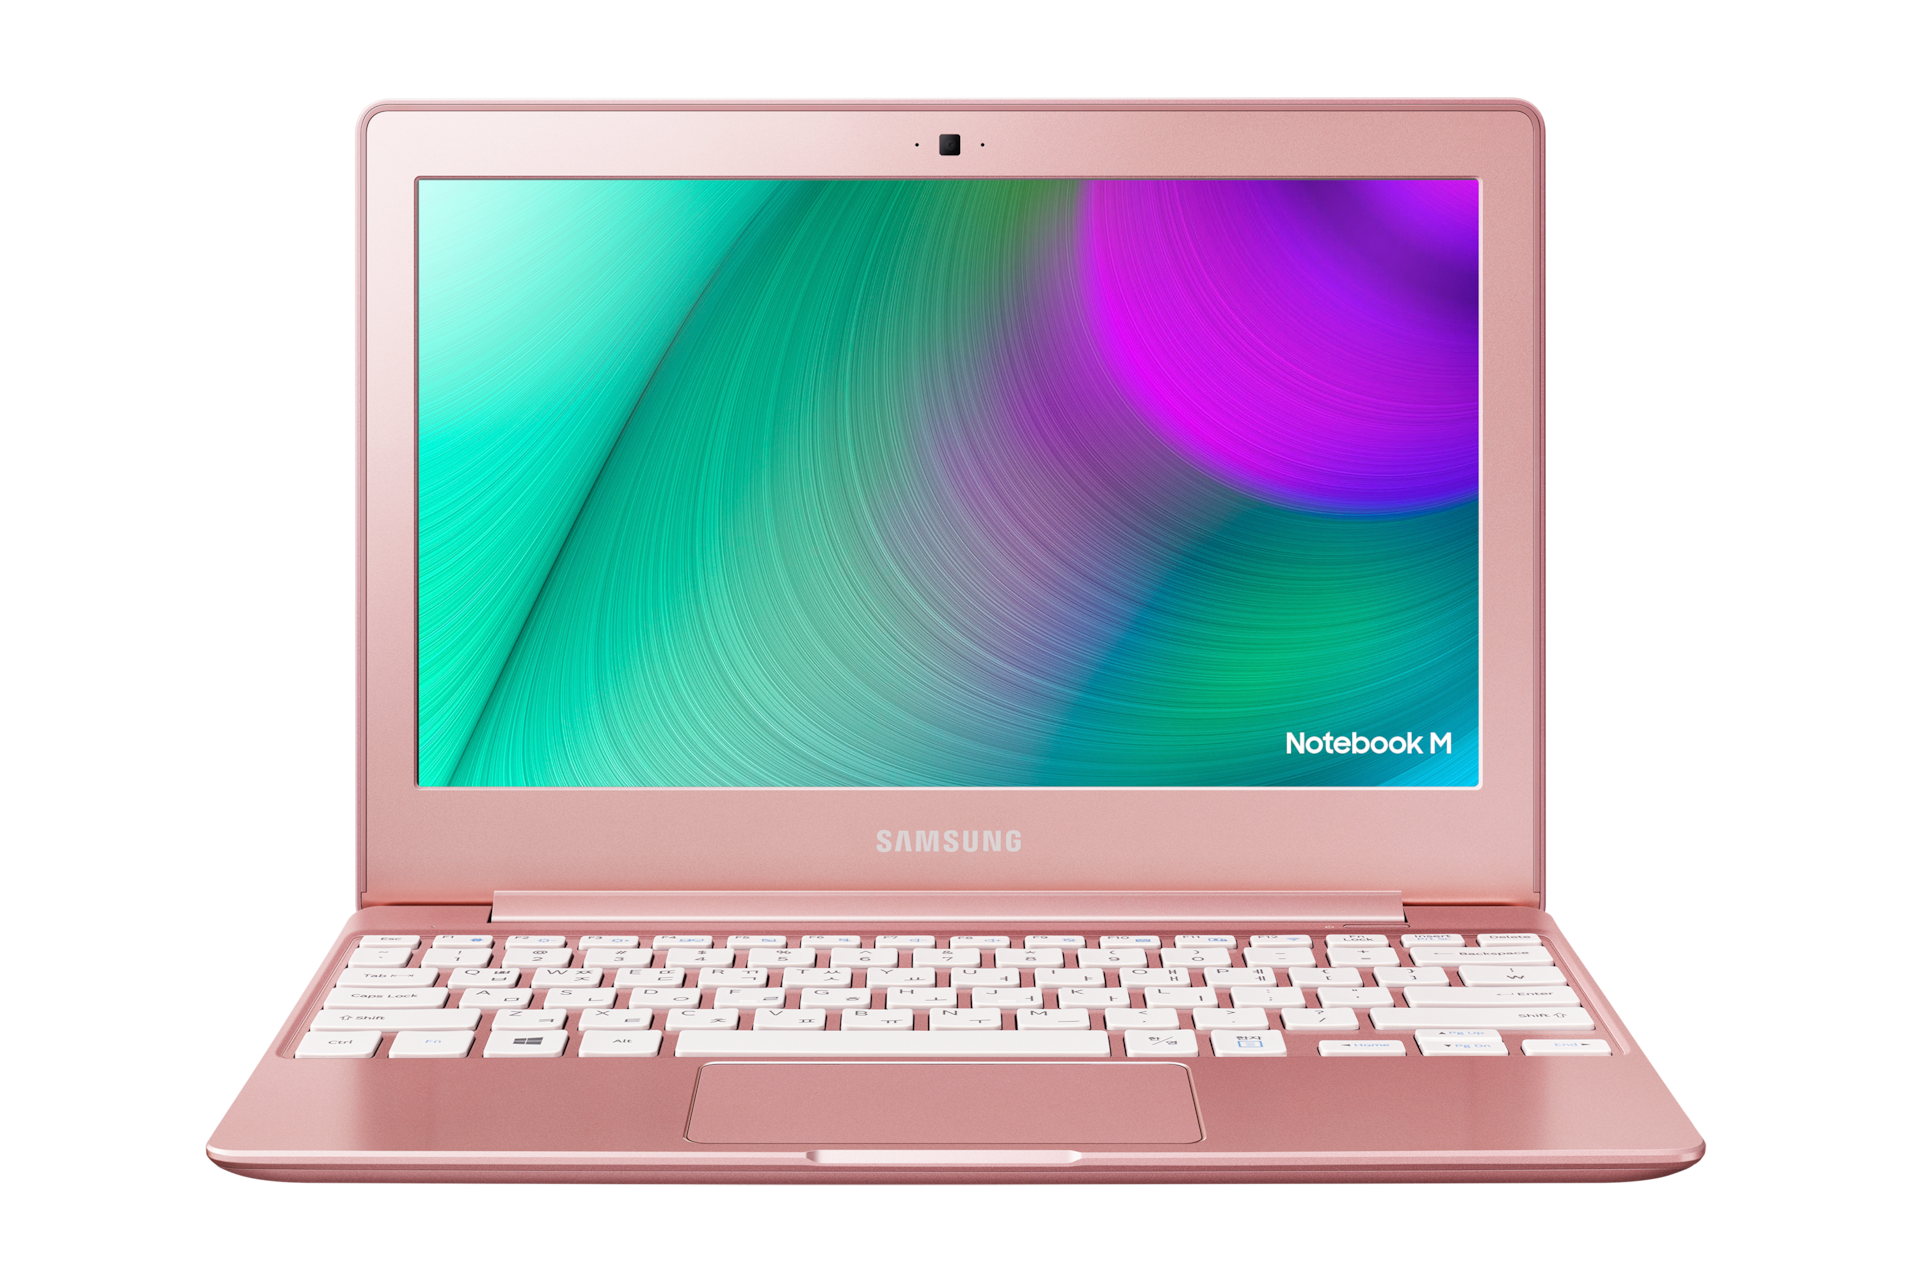 Розовый экран ноутбука